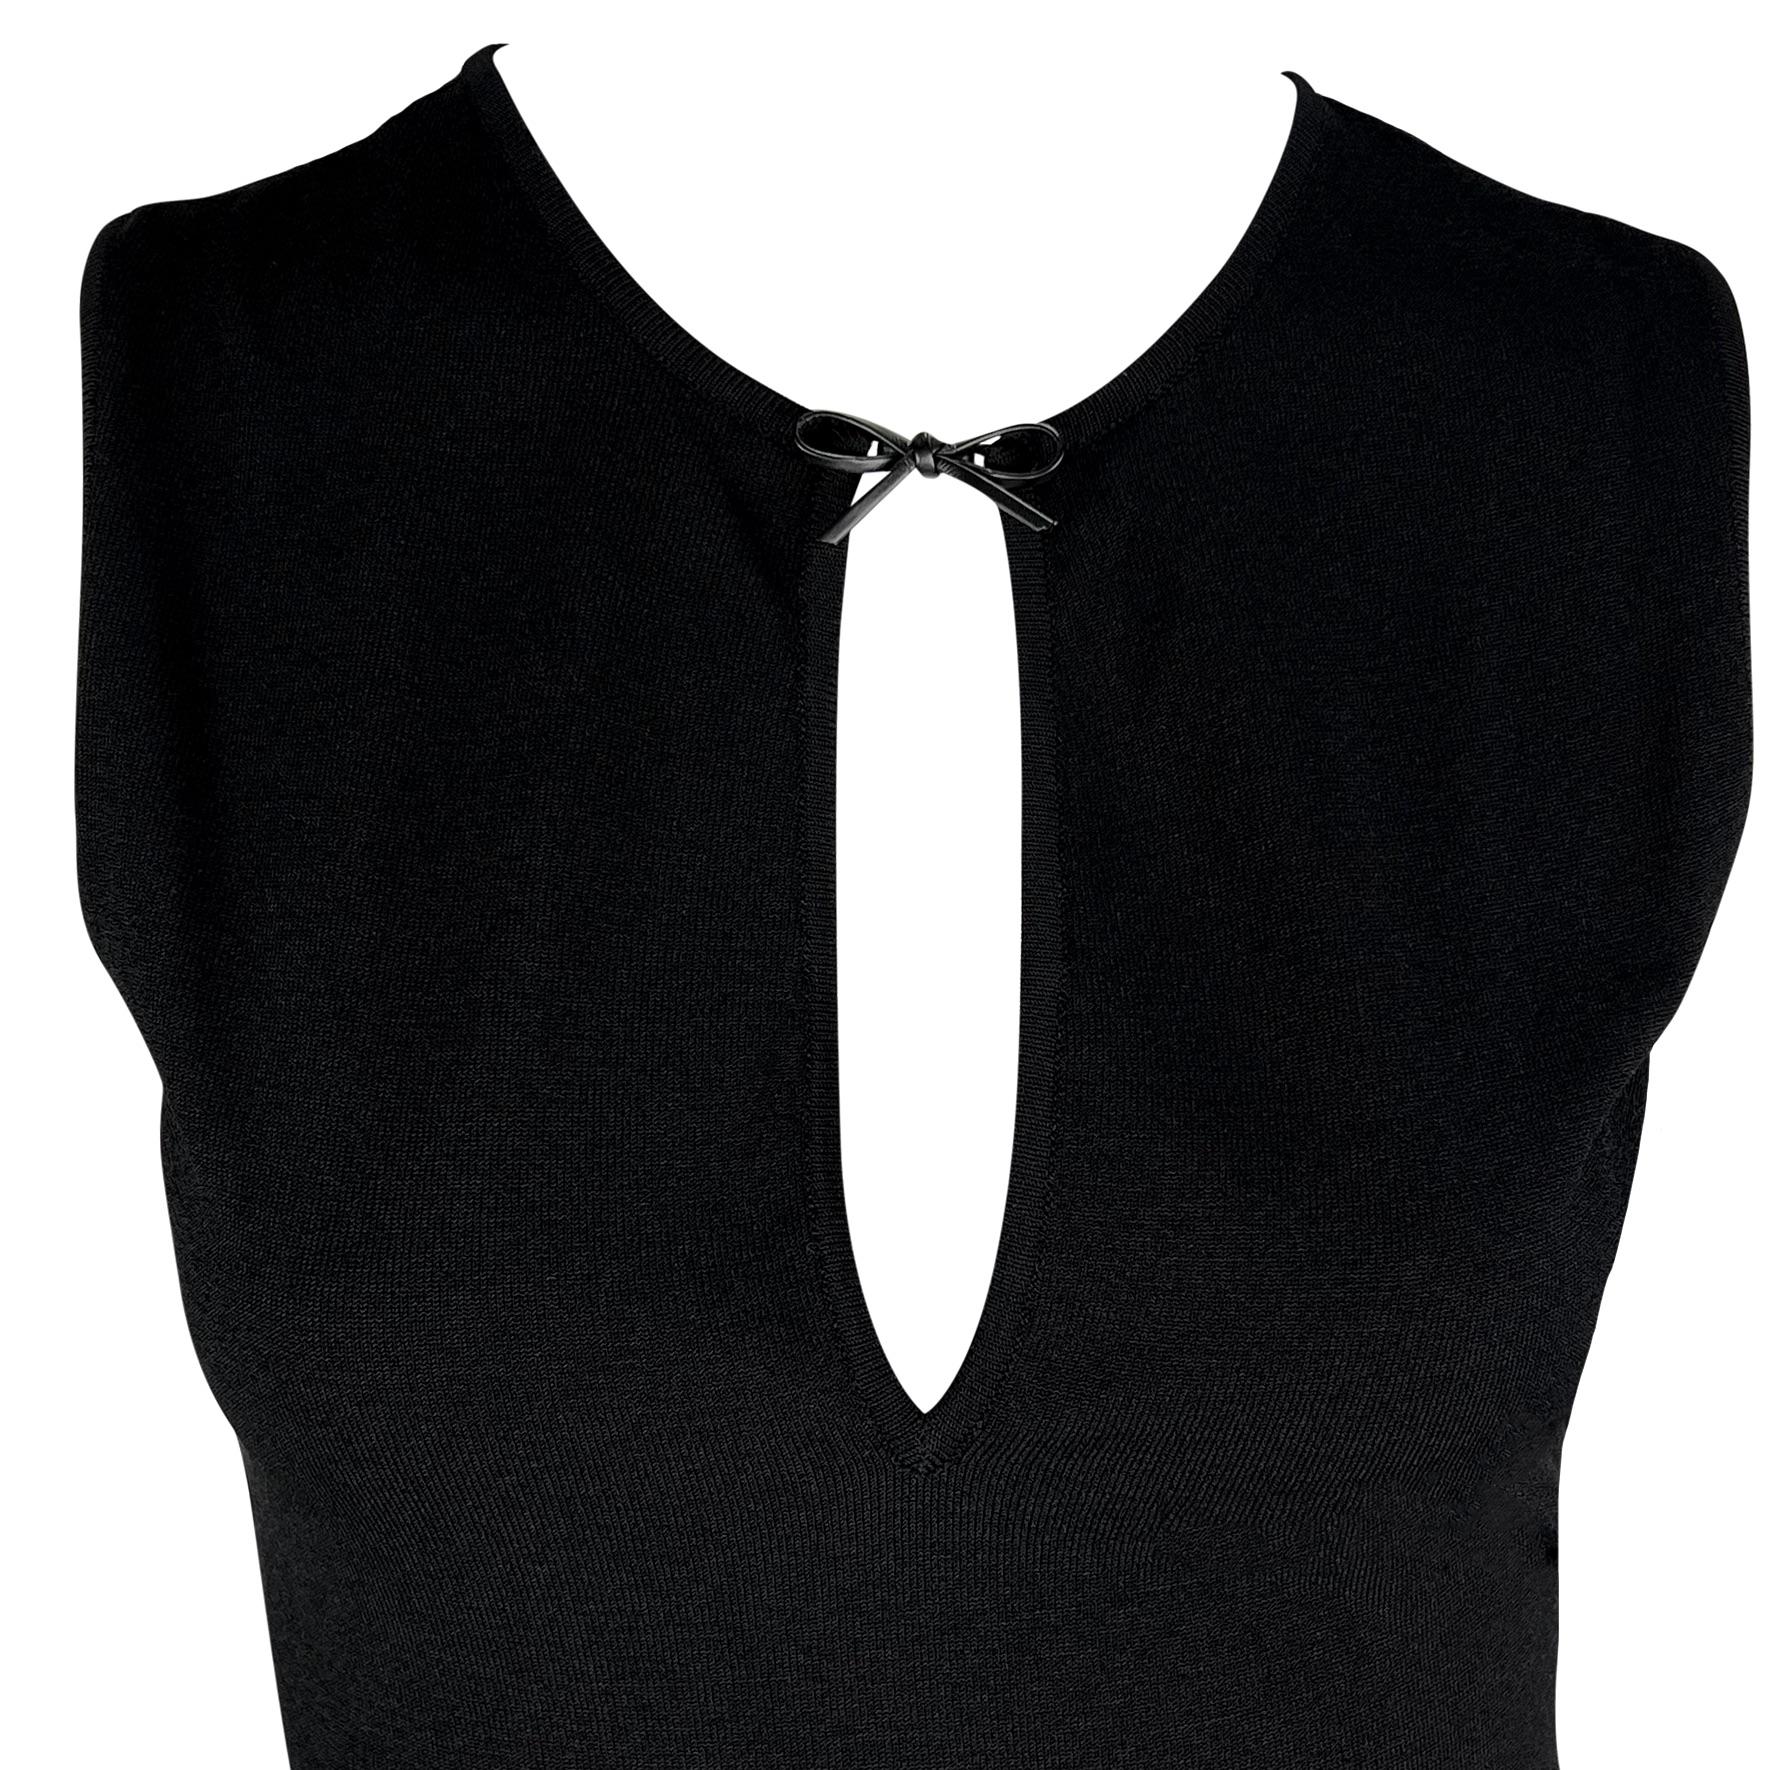 Tom Ford entwarf dieses figurbetonte schwarze Stretch-Kleid als Teil der Gucci Frühjahr/Sommer 2000 Kollektion. Dieses mittellange Body Con Kleid hat einen tiefen Ausschnitt, der mit einer zierlichen Lederschleife akzentuiert ist. 

Ungefähre